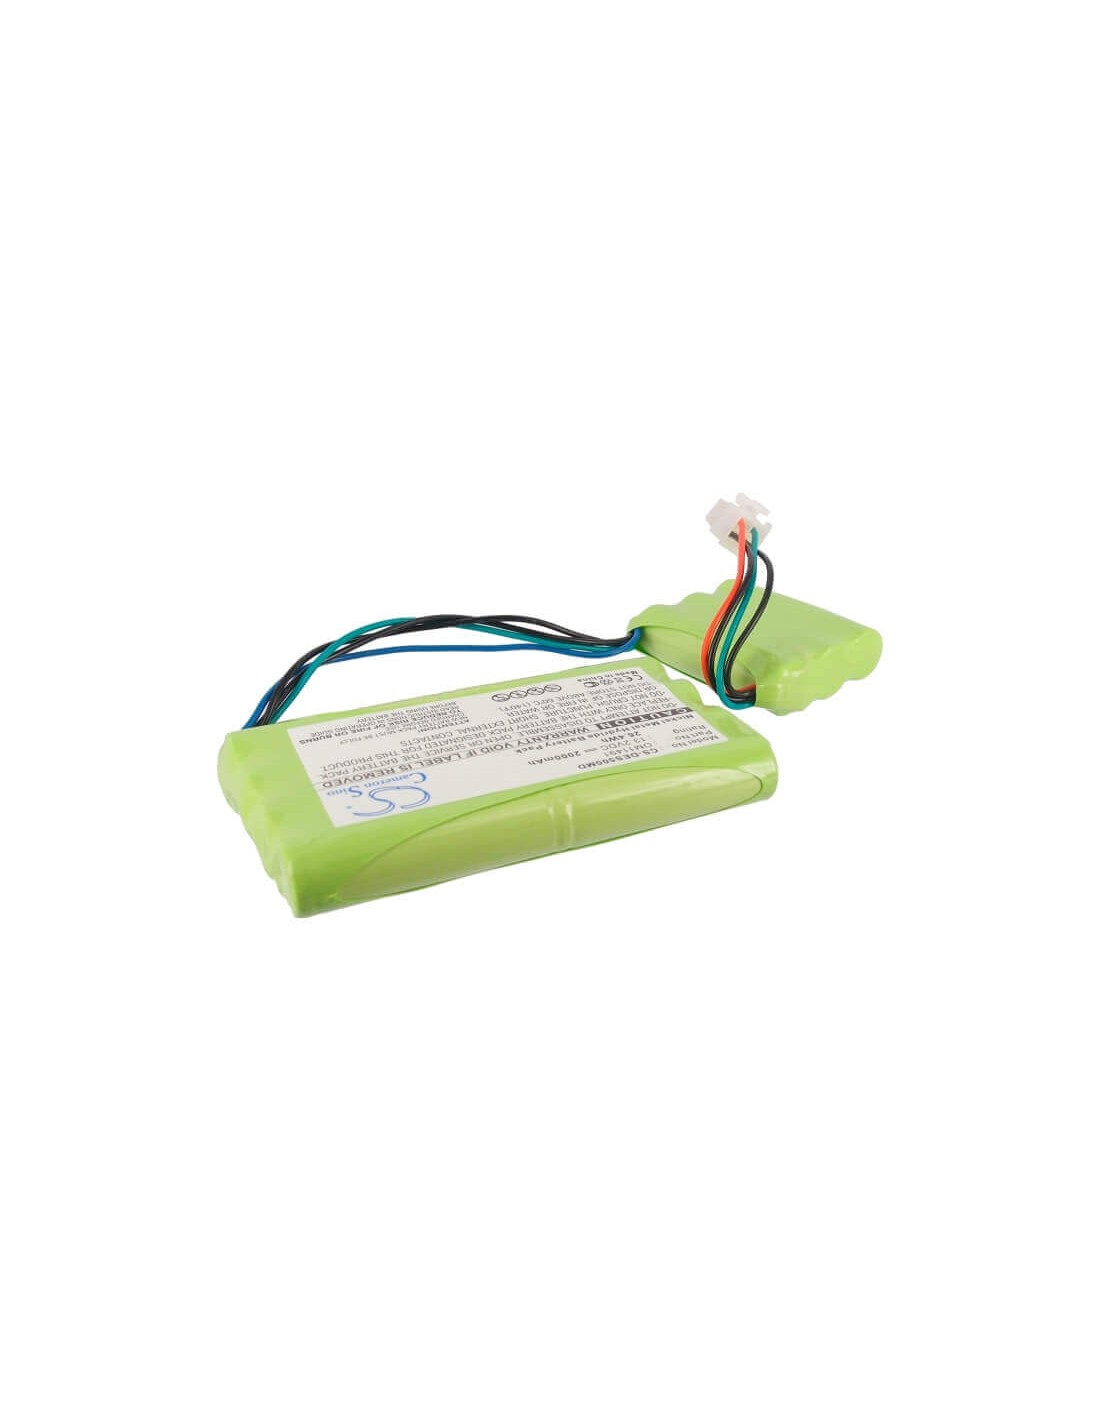 Battery for Datek S/5 Light Monitor, S5 Light Monitor 13.2V, 2000mAh - 26.40Wh